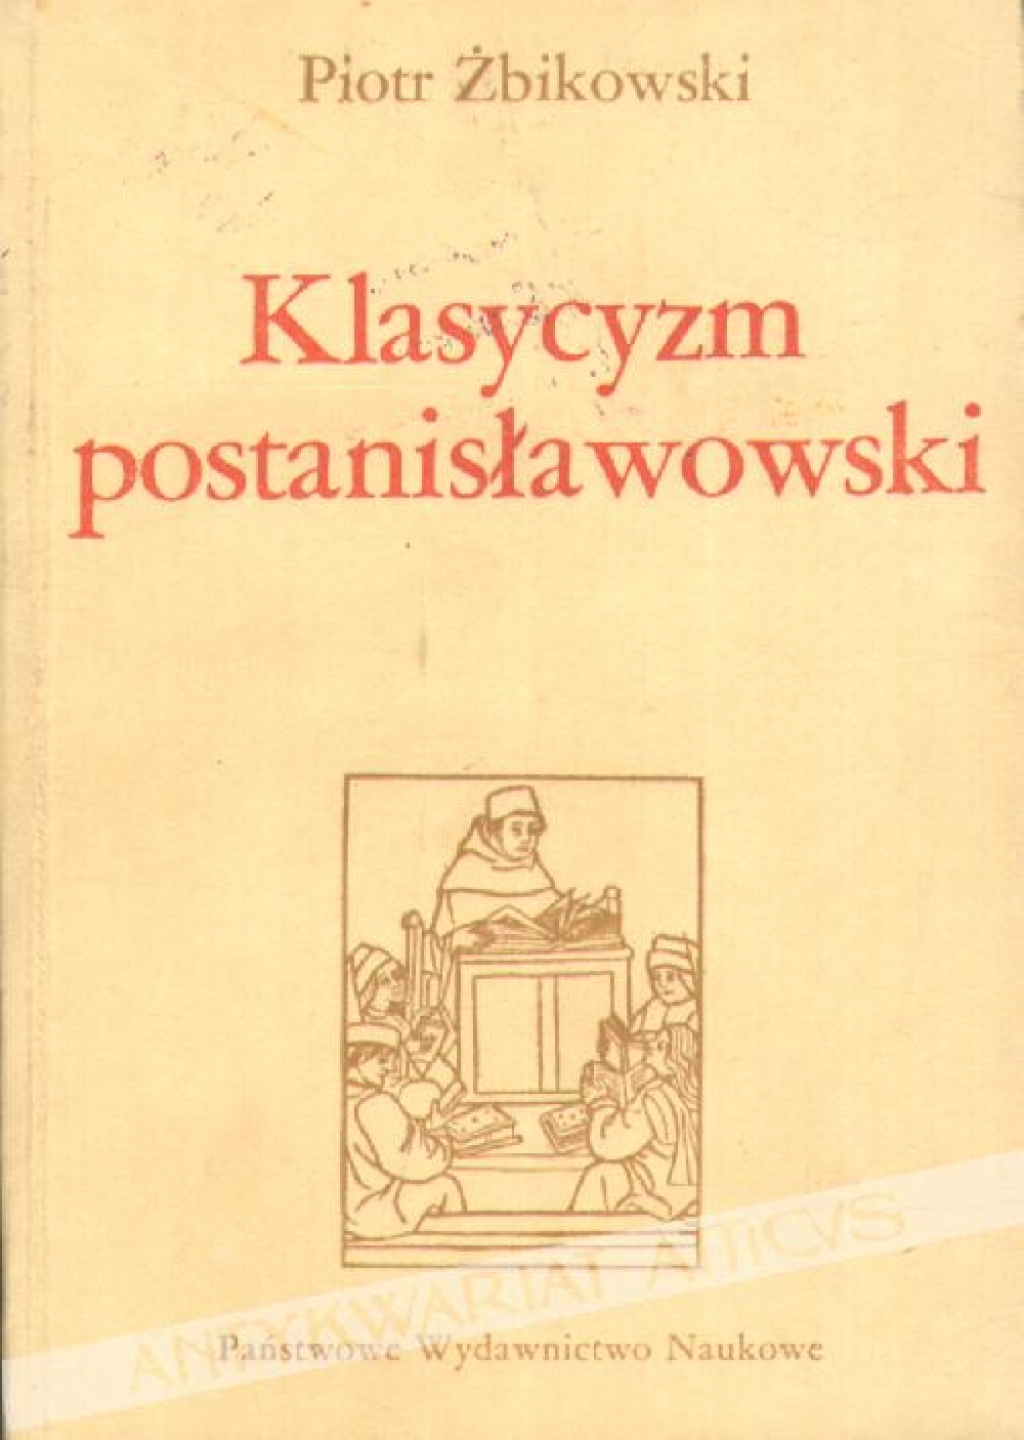 Klasycyzm postanisławowski. Doktryna estetycznoliteracka